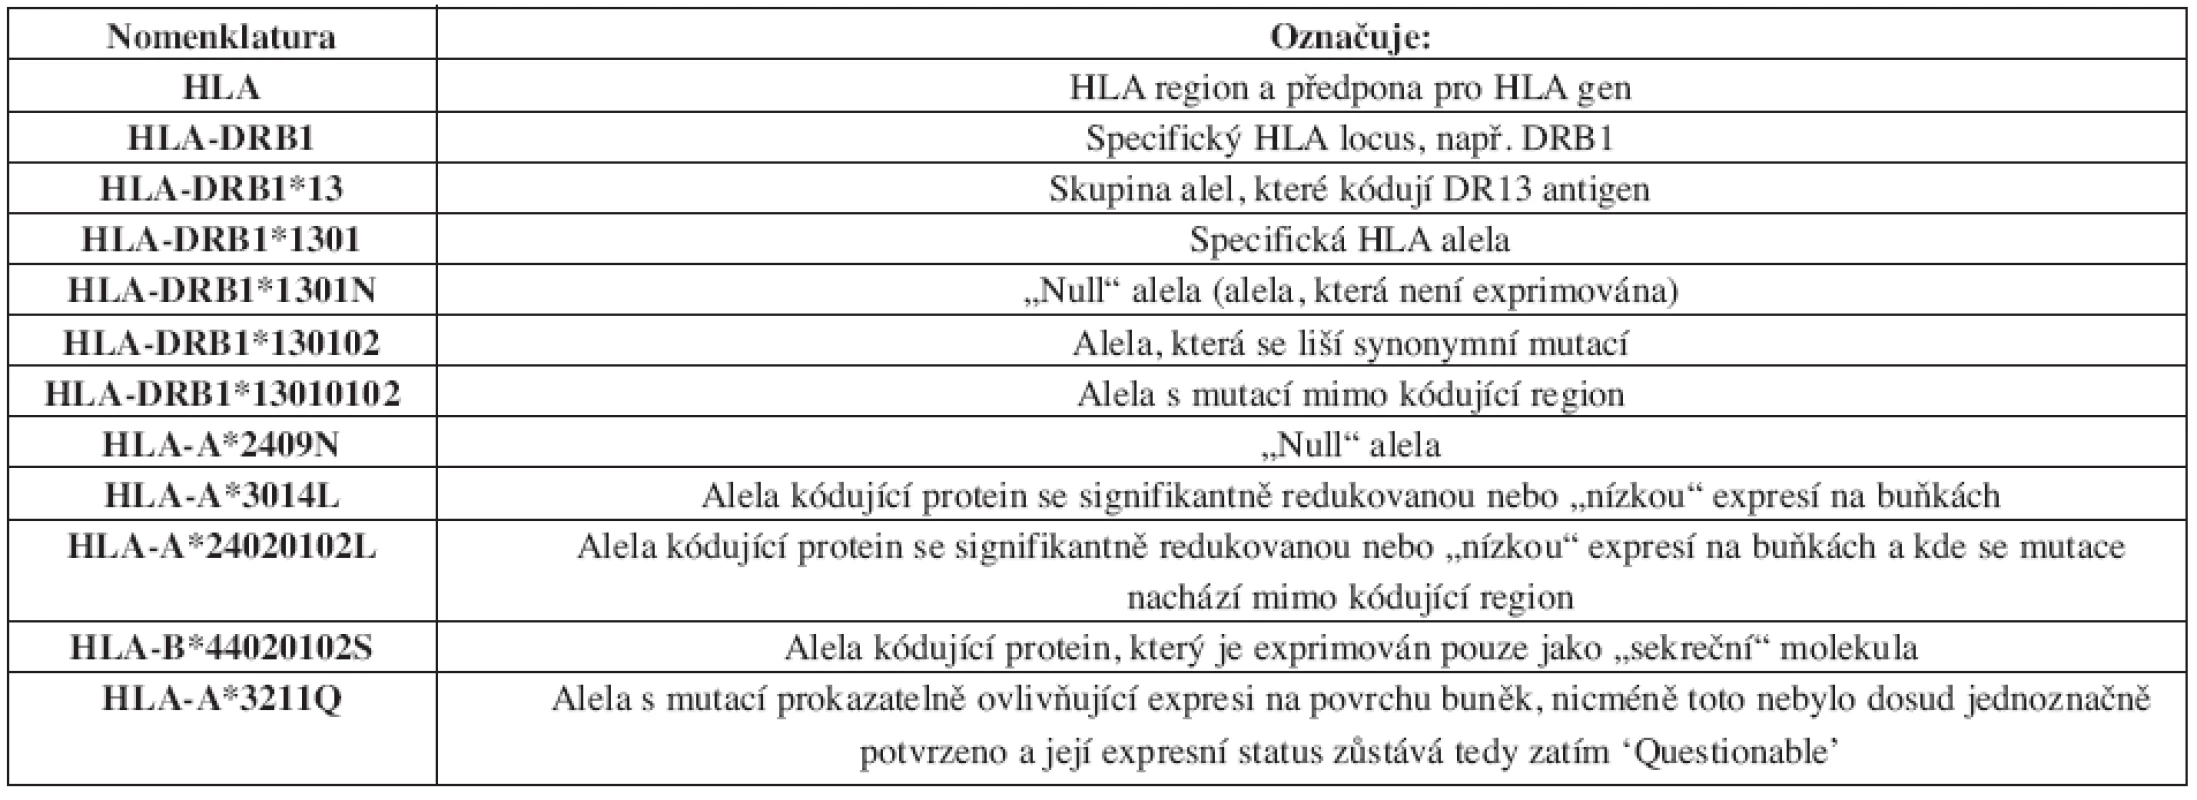 Princip dosavadní nomenklatury pro geny HLA systému z roku 2004 (platná do 07/2009).